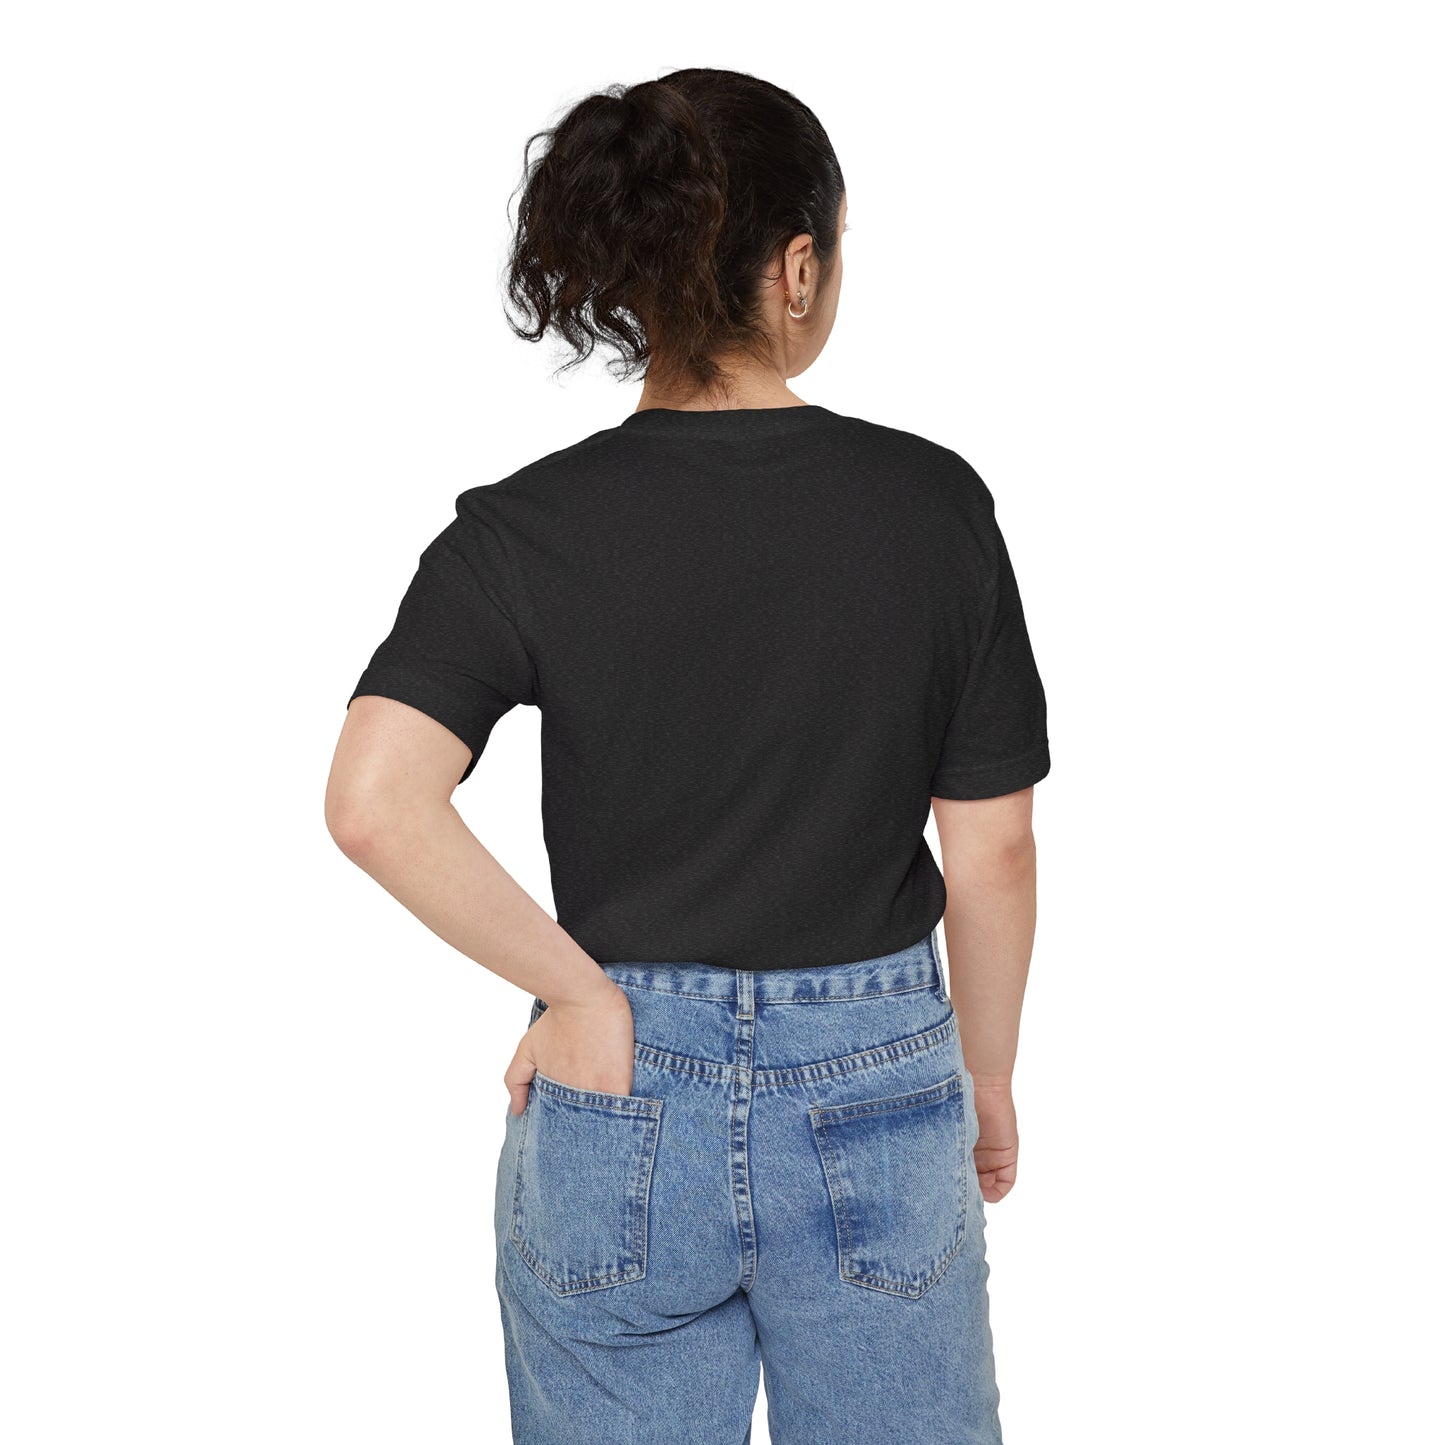 'Détroit Rocque Cité' Pocket T-Shirt | Unisex Standard